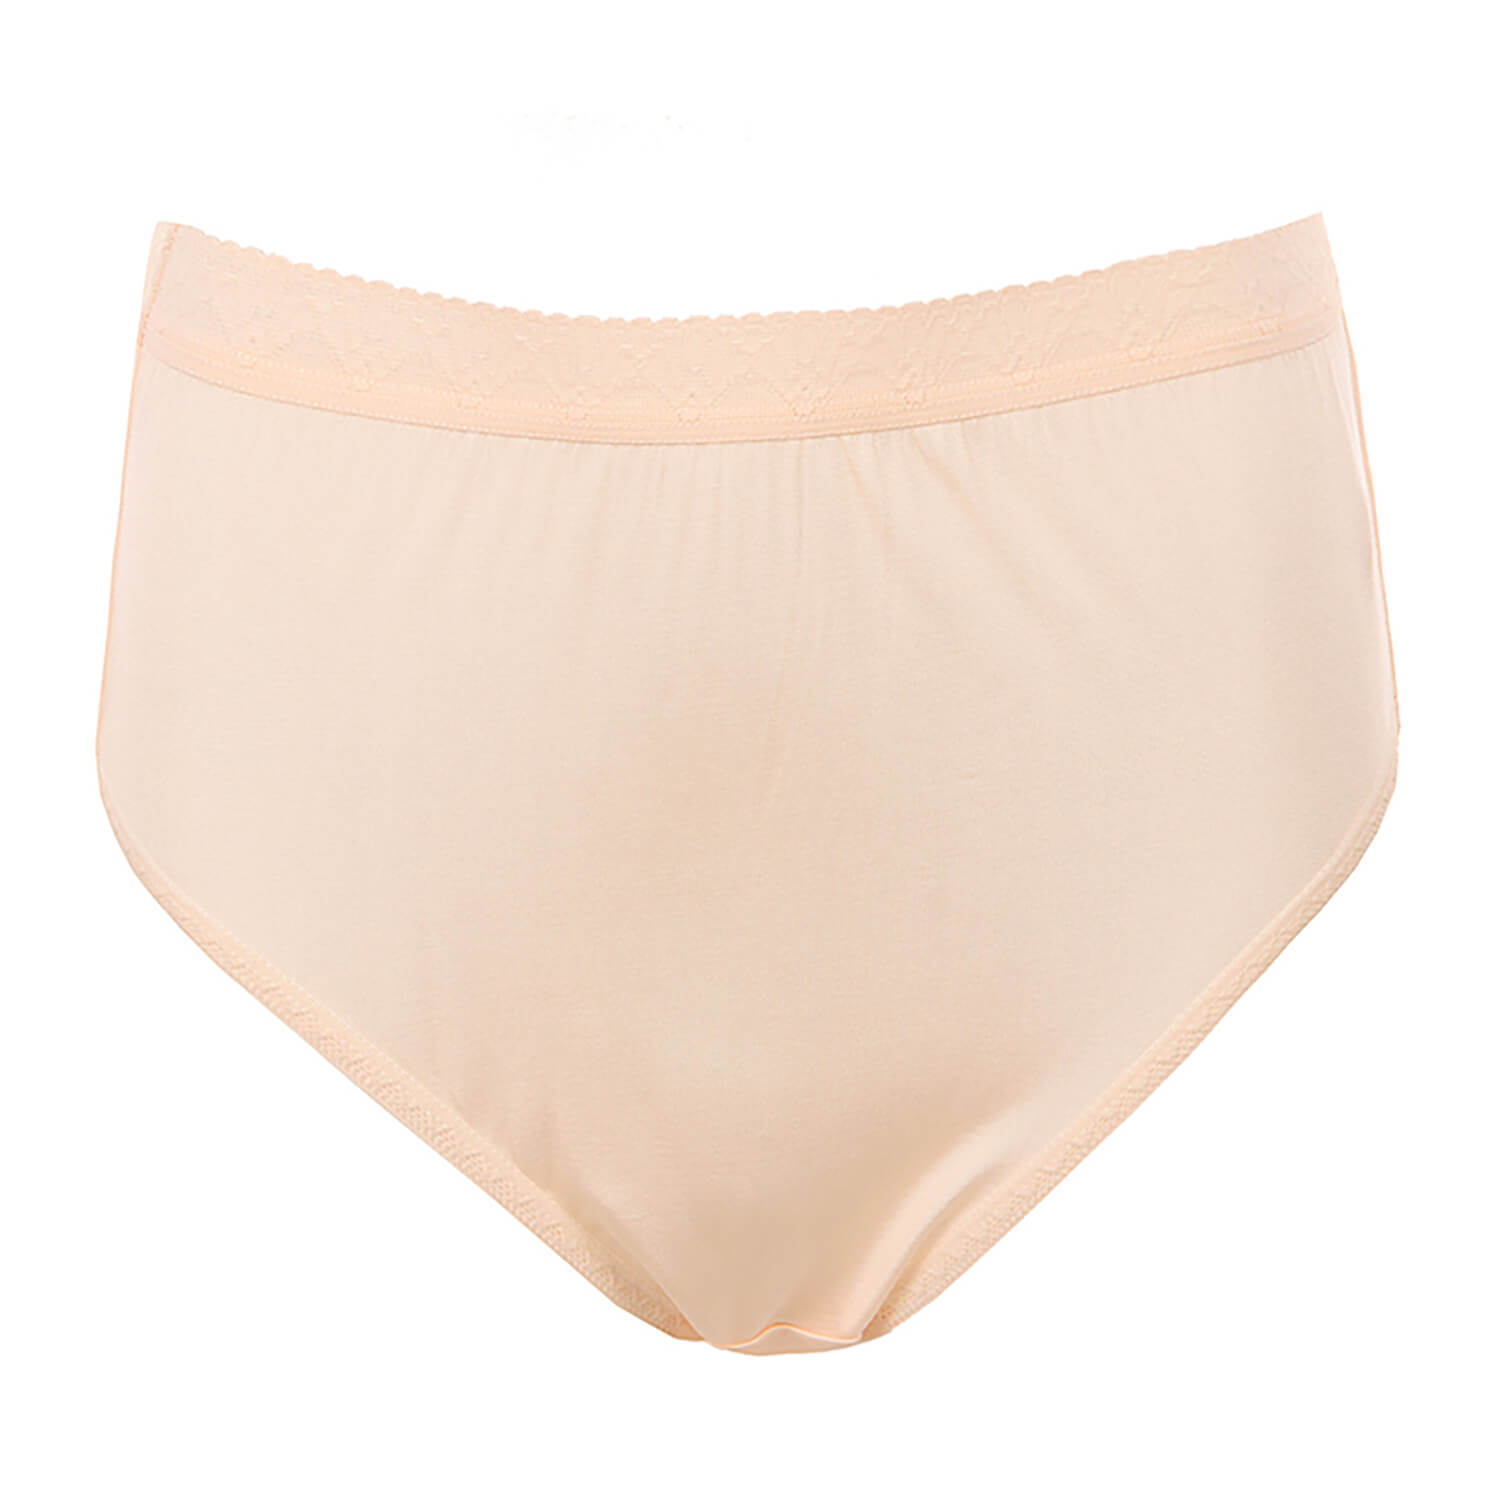 Silk underwear women's mulberry silk knitted underwear thin briefs - slipintosoft